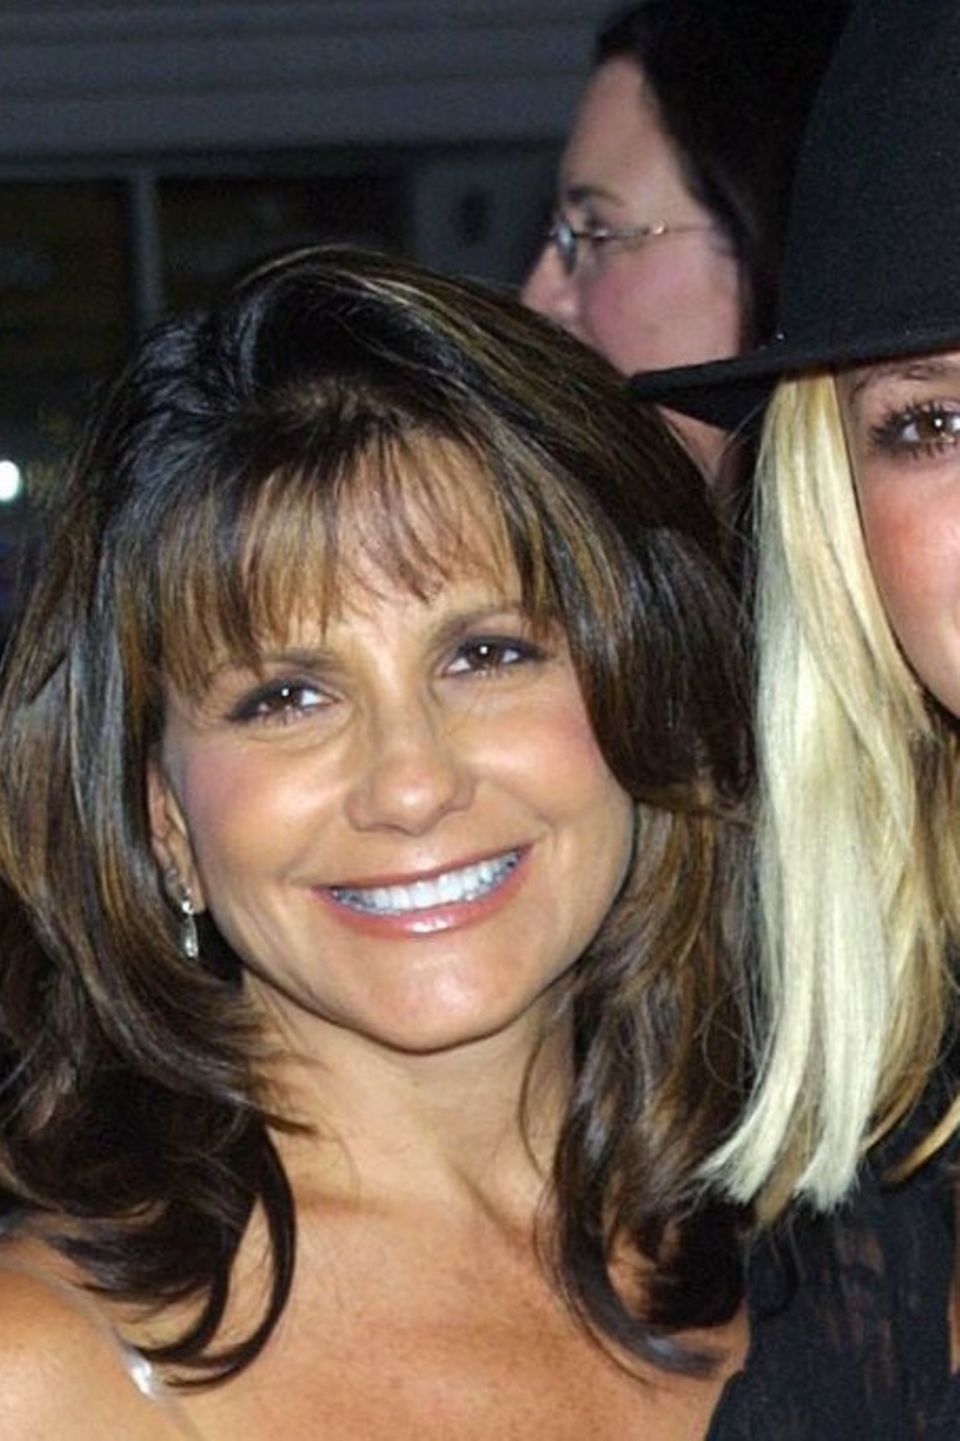 Lynne und Britney Spears 2002 in Hollywood.